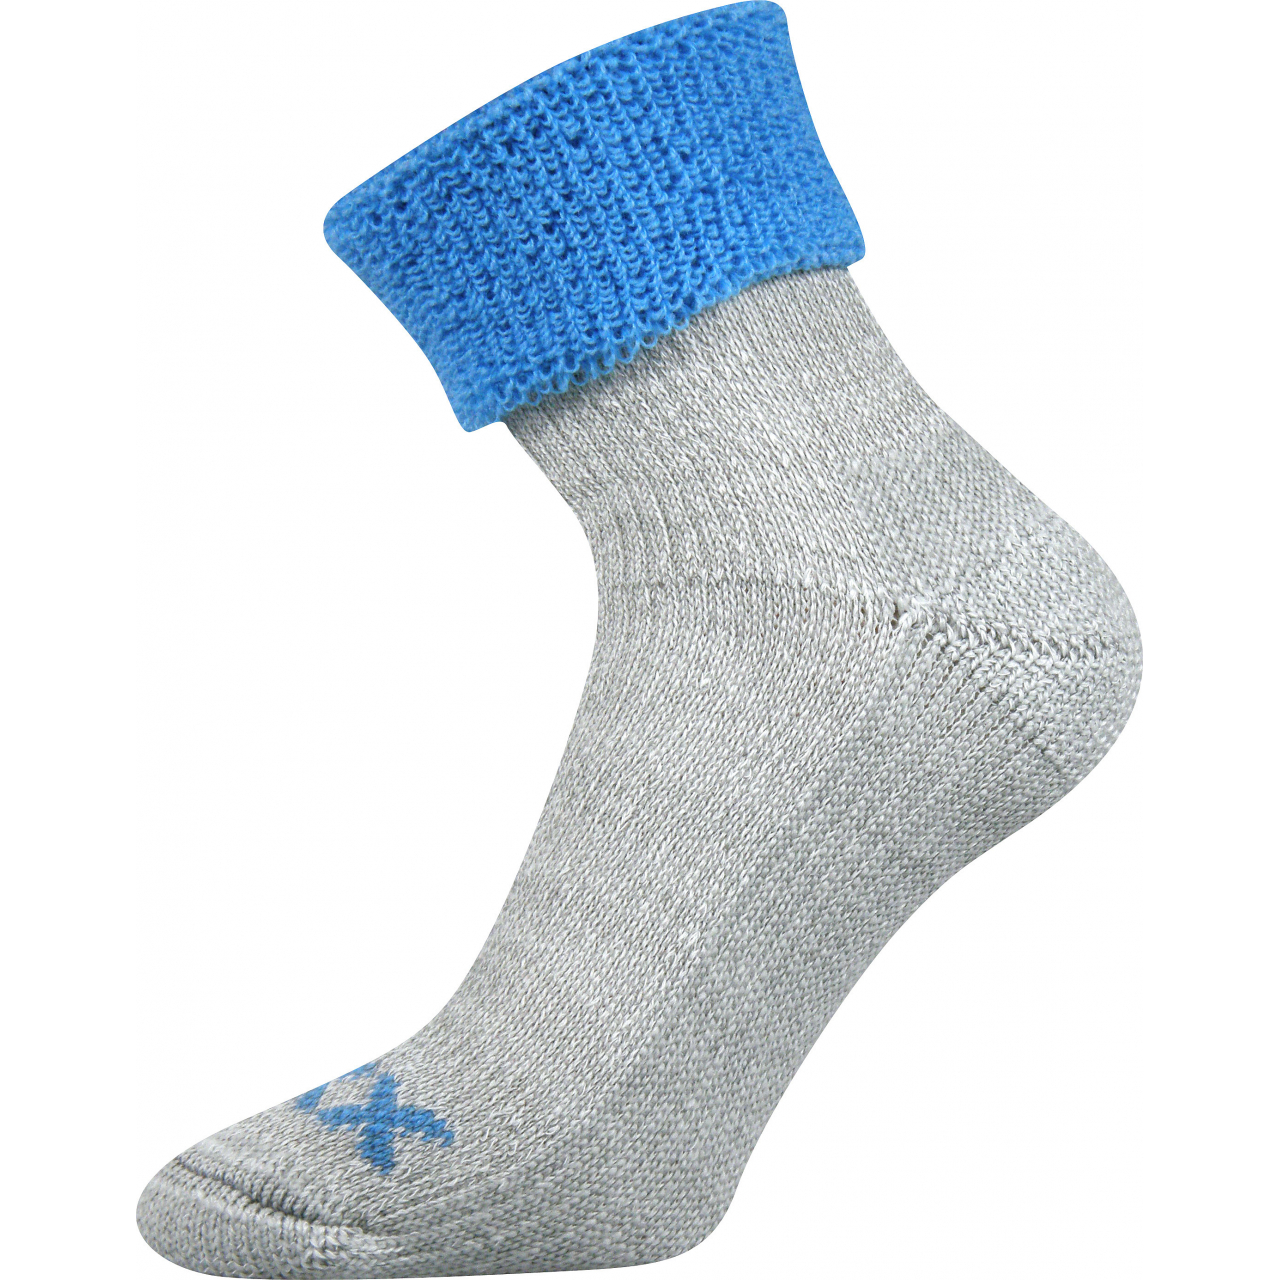 Ponožky dámské thermo Voxx Quanta - šedé-modré, 39-42